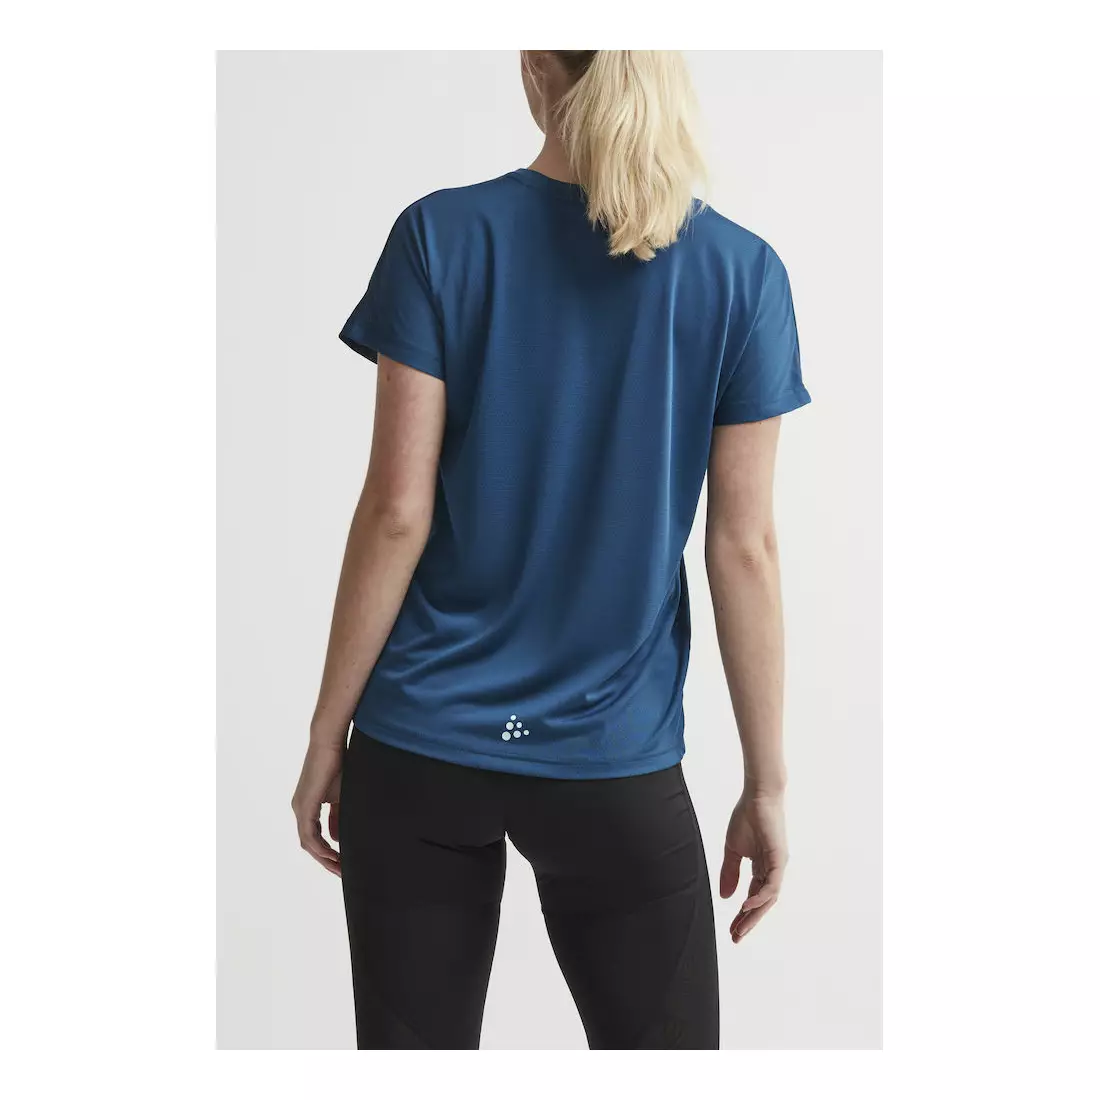 CRAFT EAZE MESH women's sports / running T-shirt blue 1907019-373000